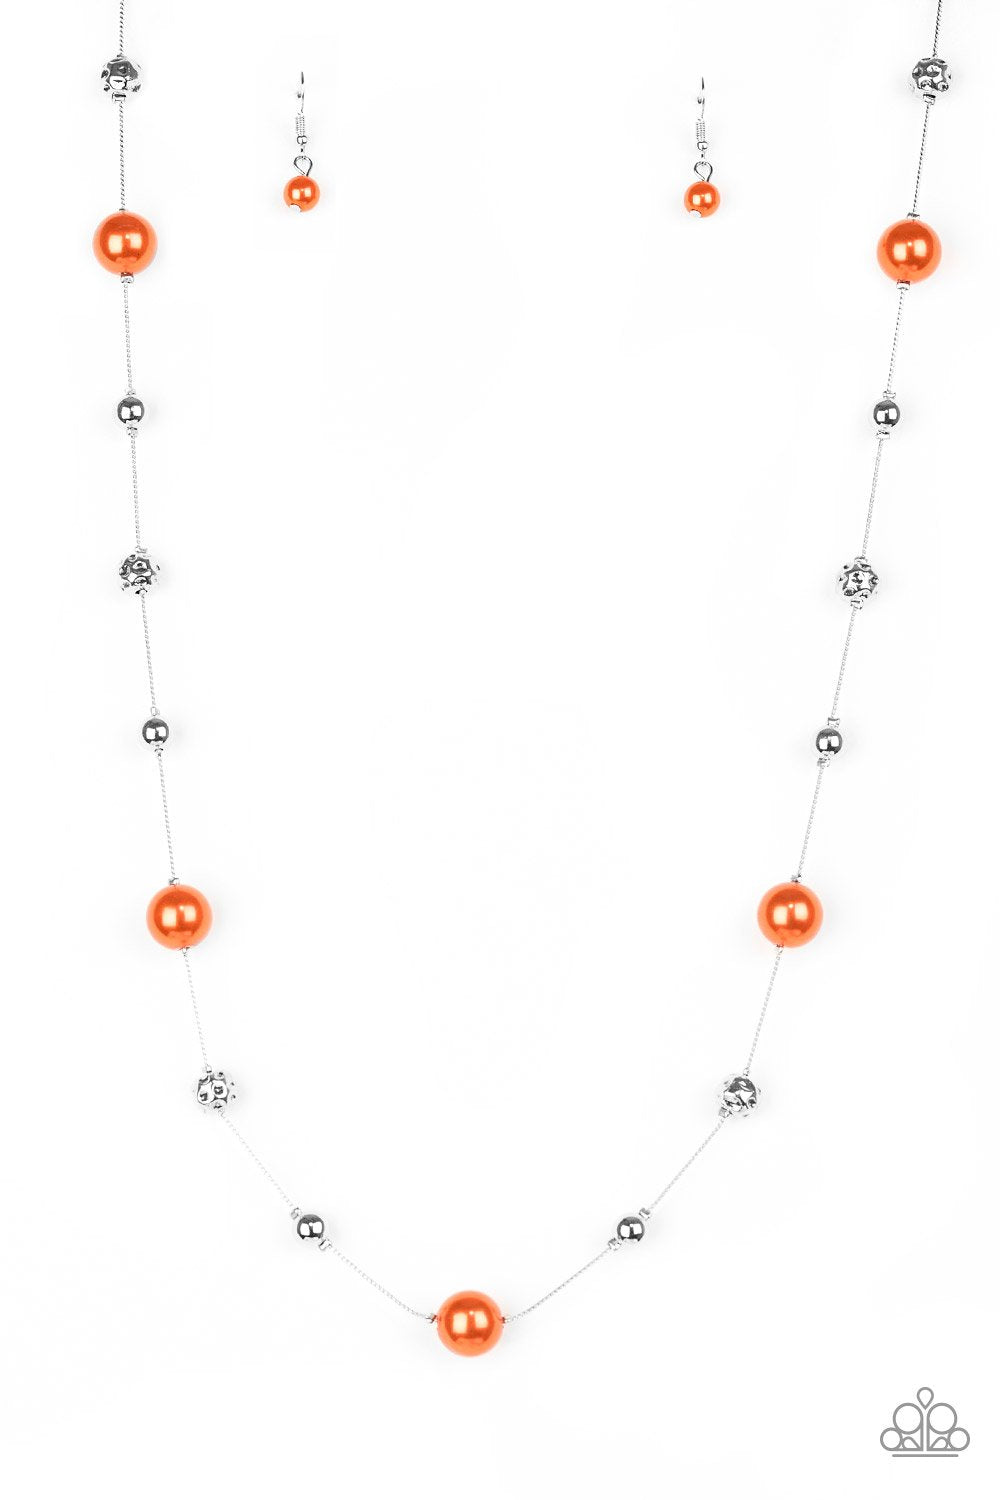 Eloquently Eloquent - Orange Necklace freeshipping - JewLz4u Gemstone Gallery